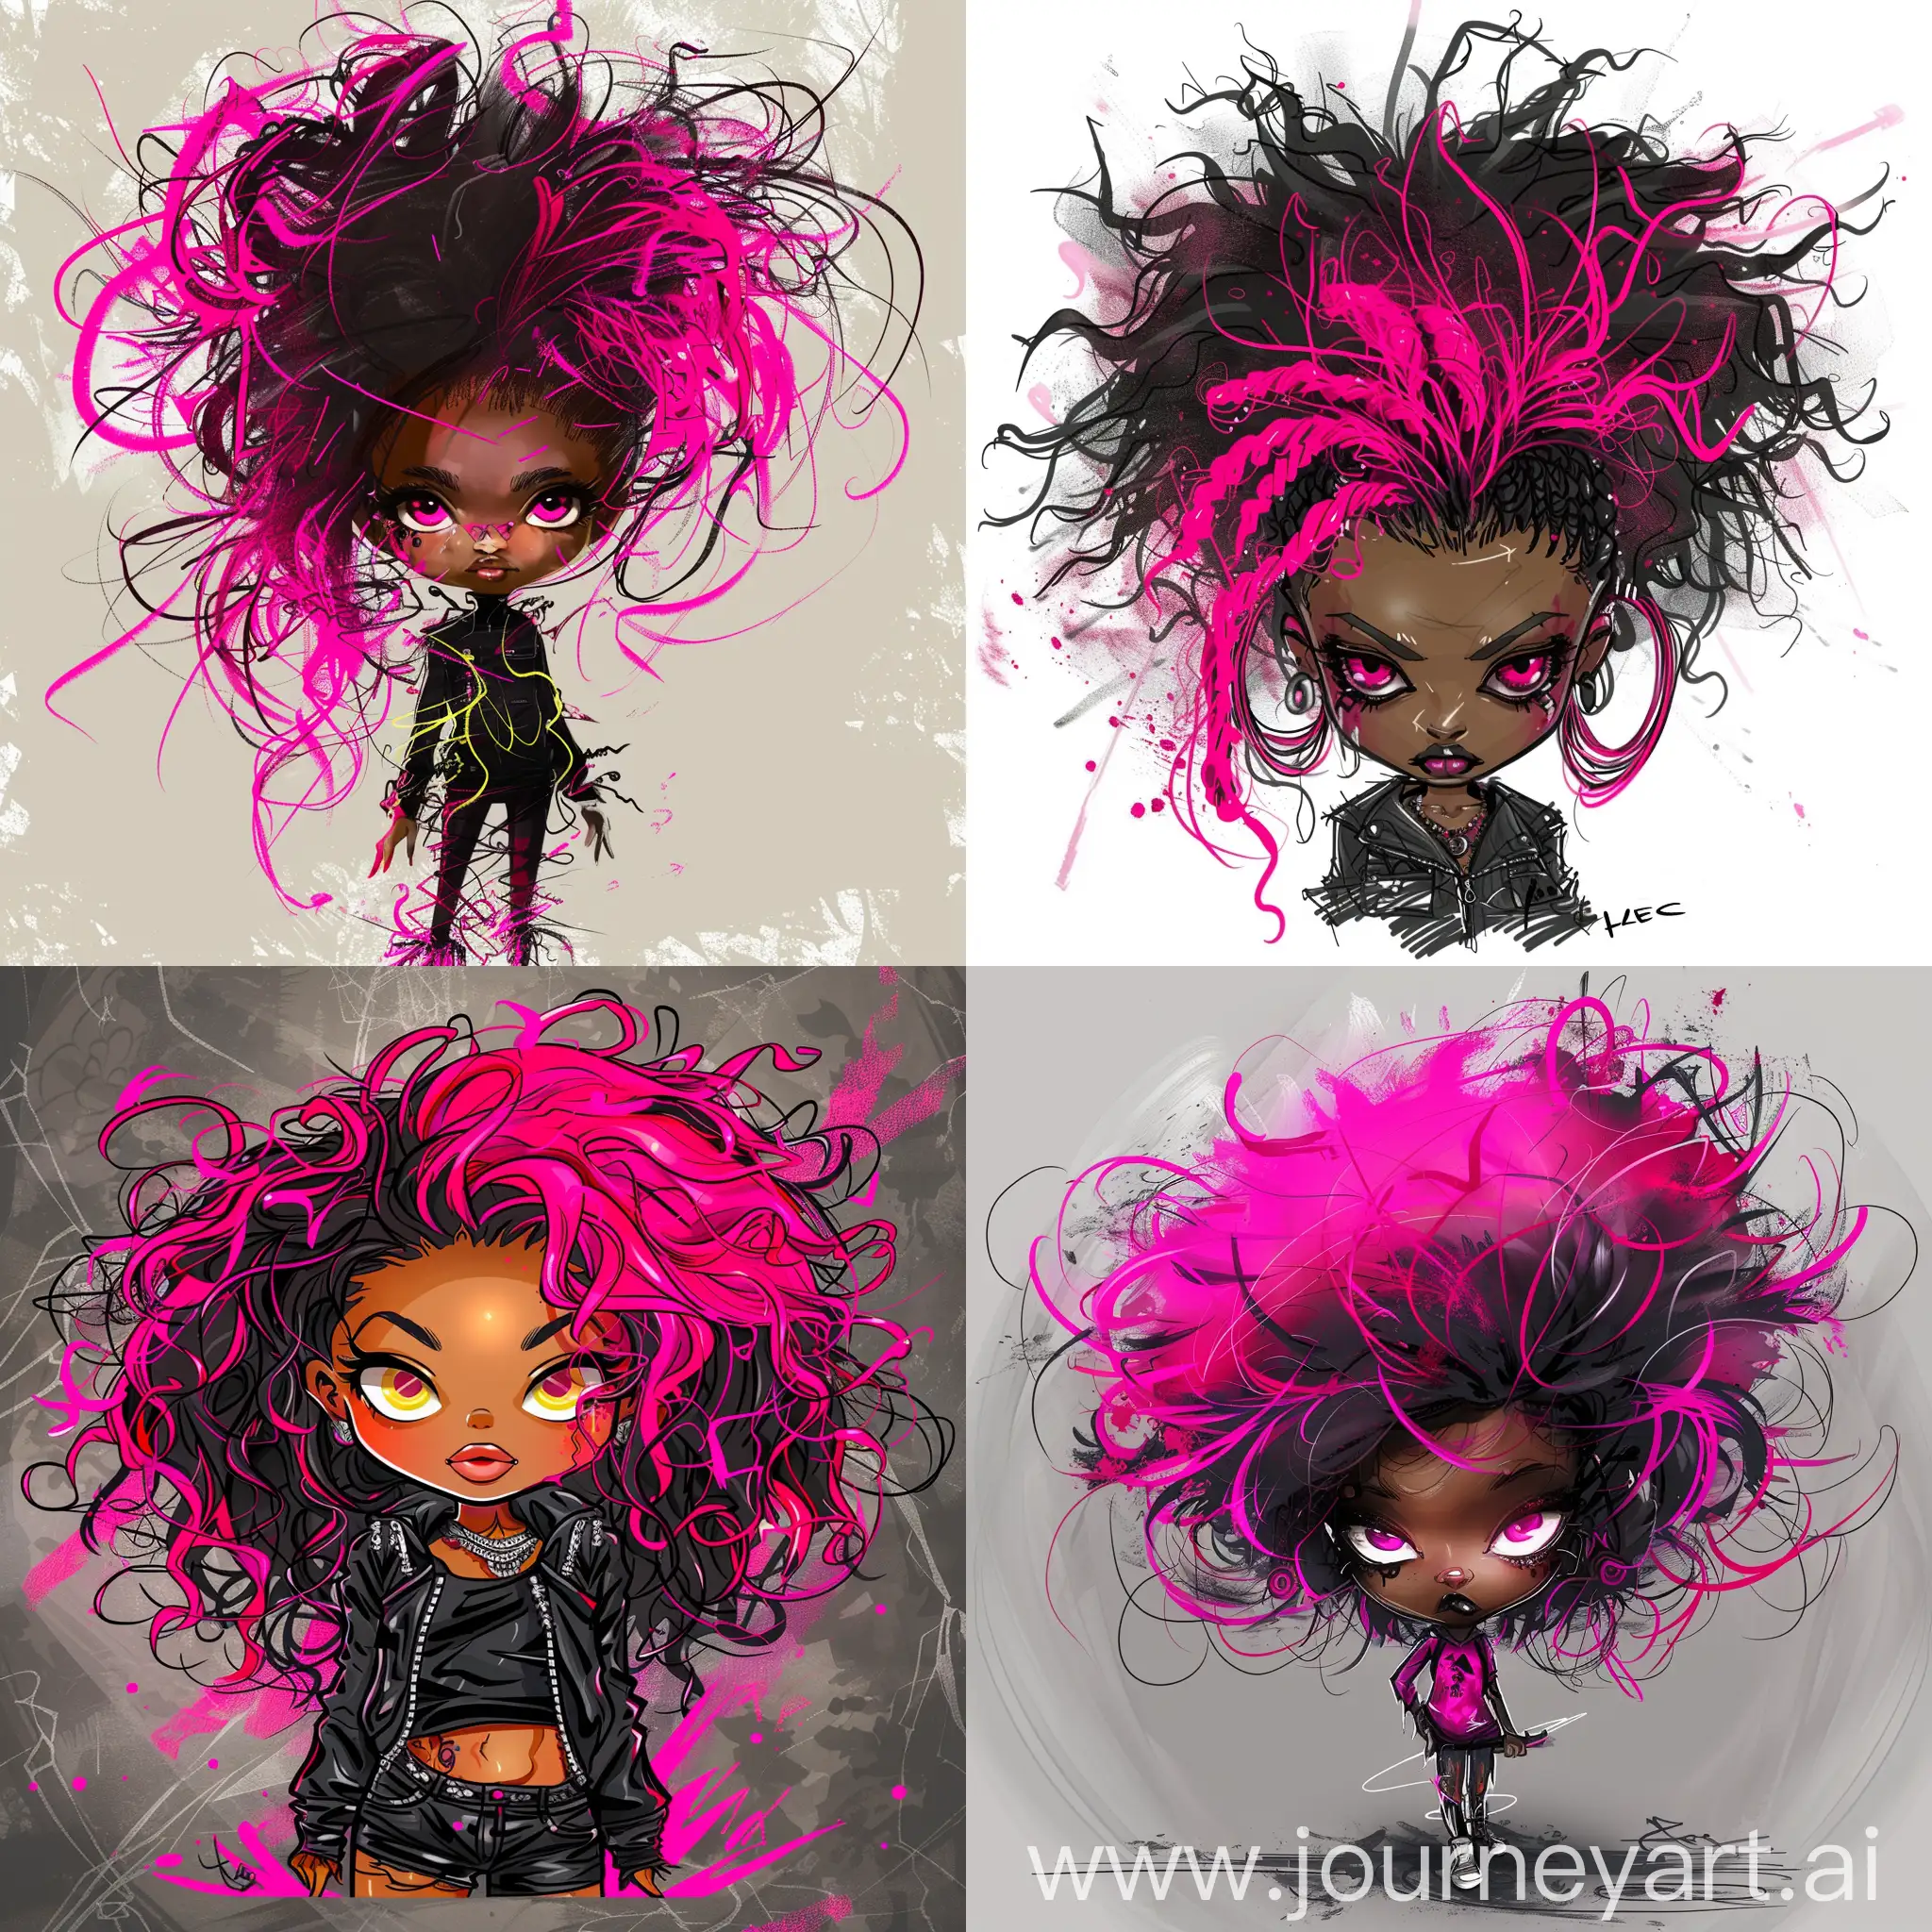 Edgy-Chibi-Boho-Punk-Rocker-with-Neon-Pink-Hair